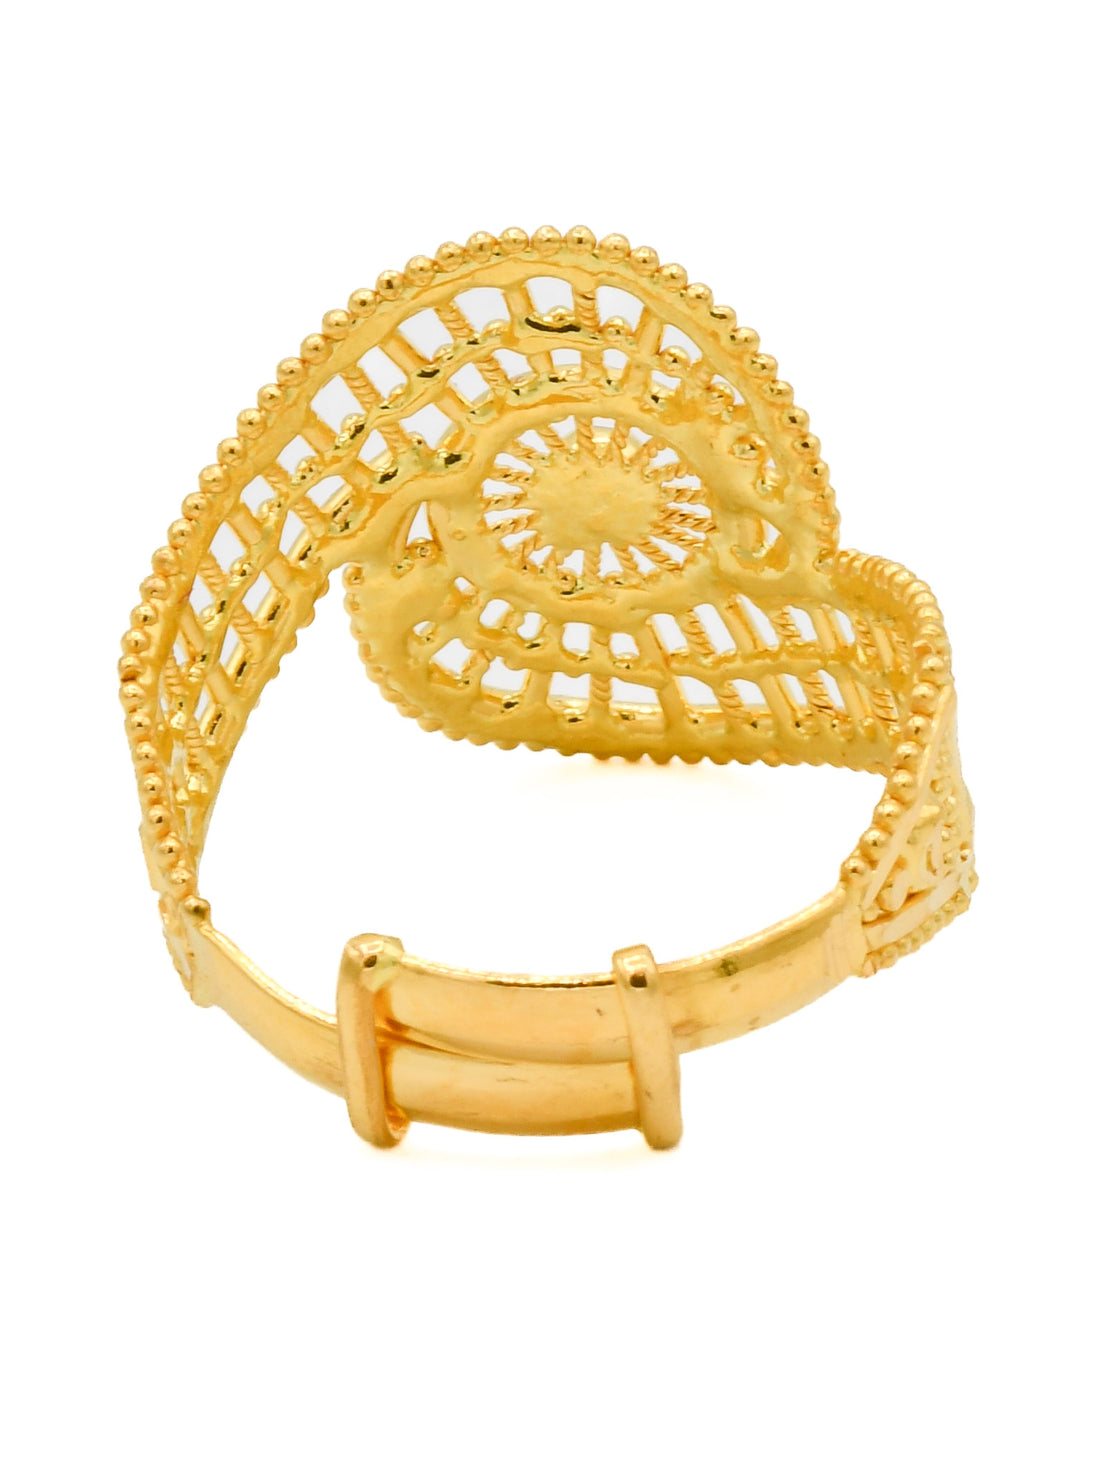 22ct Gold Adjustable Ladies Ring - Roop Darshan